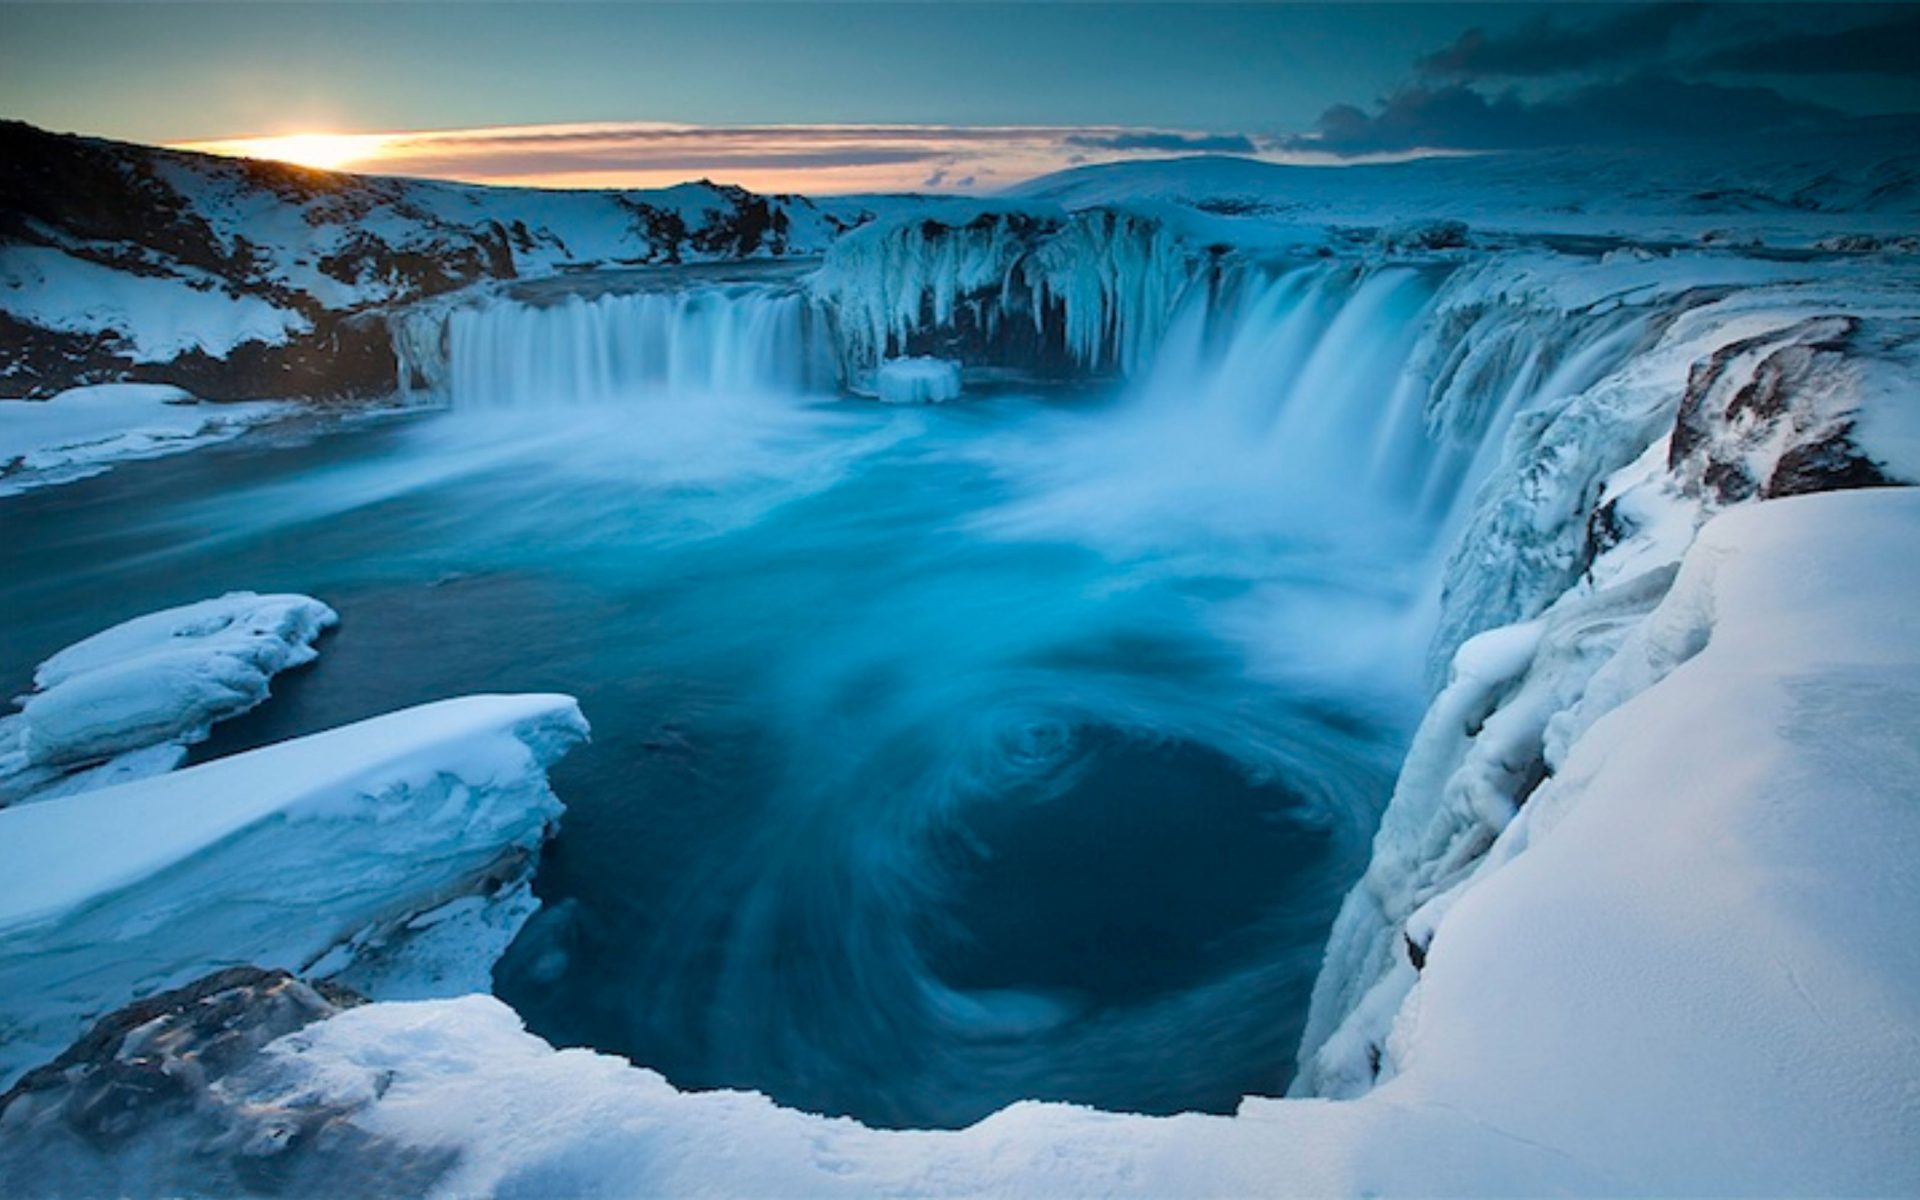 Frozen Godafoss Waterfall in Iceland